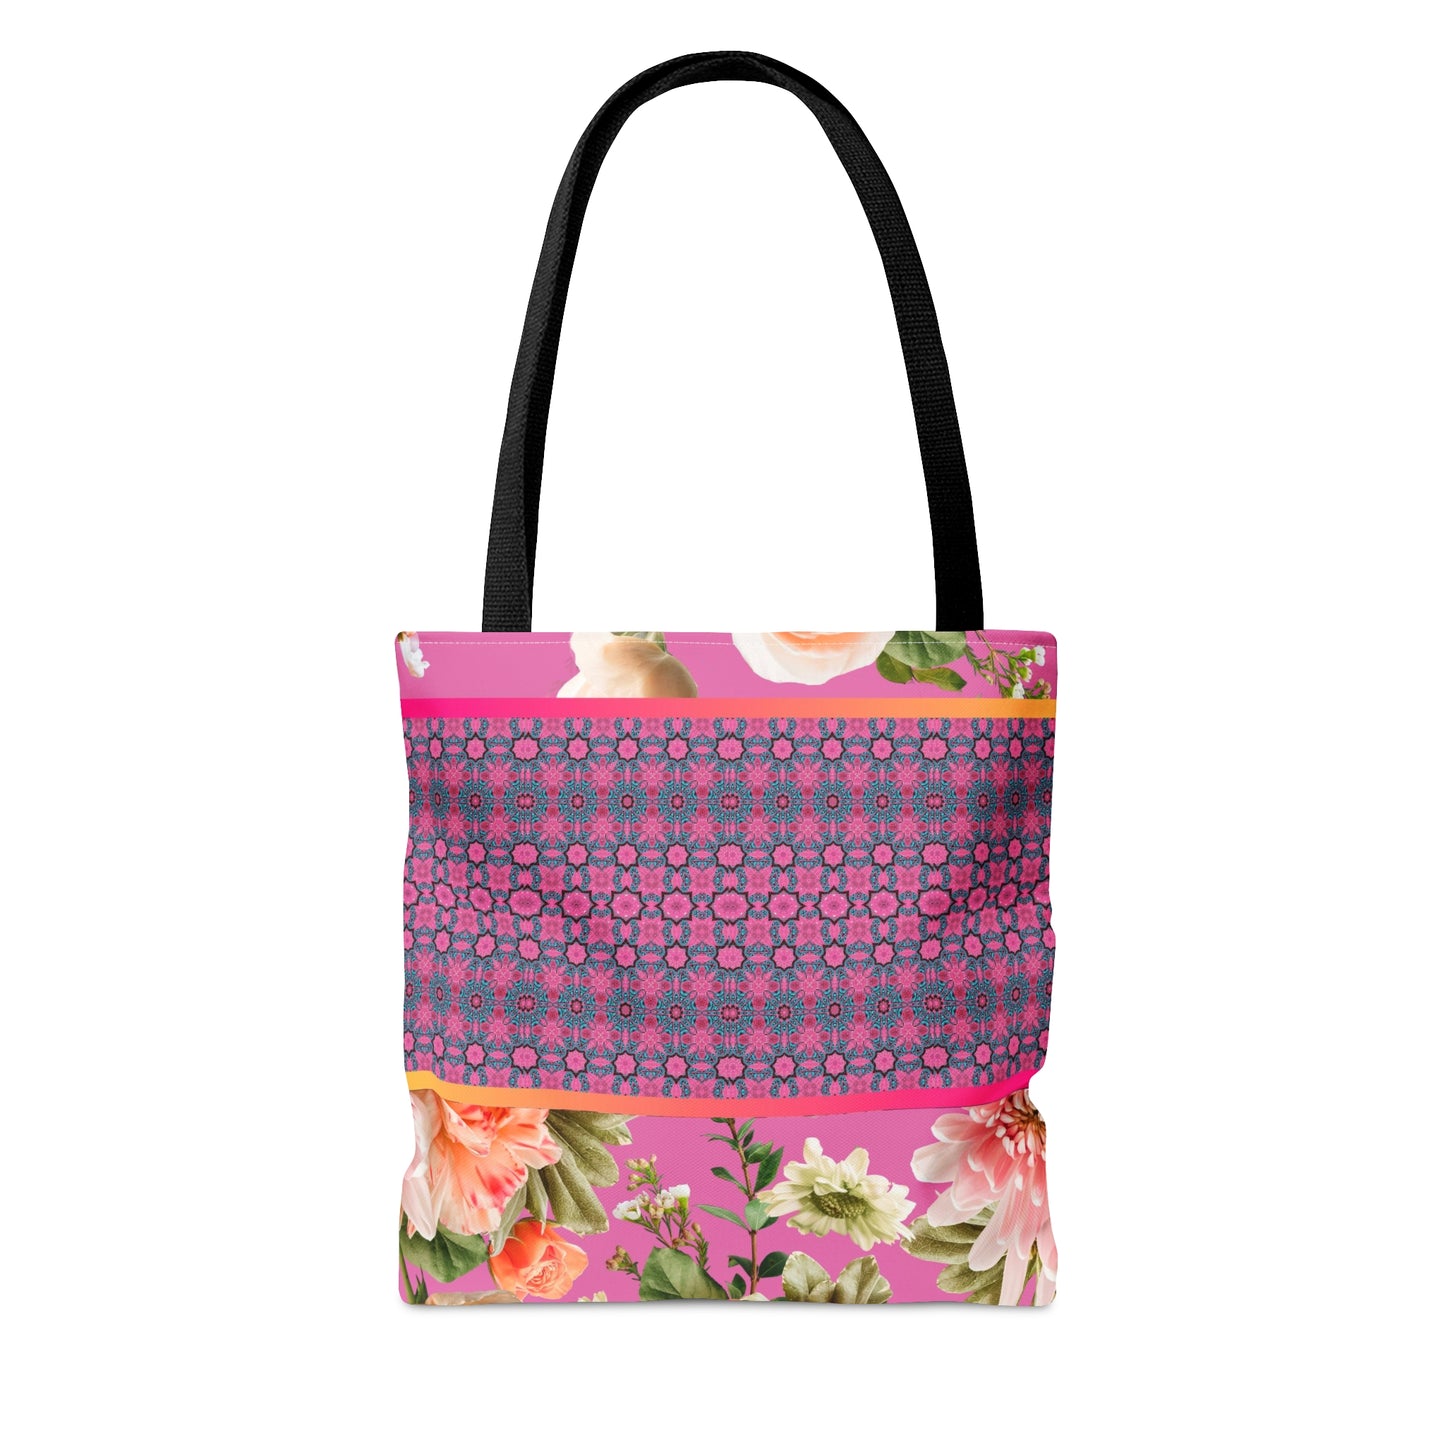 Radiance Floral & Pattern Tote Bag